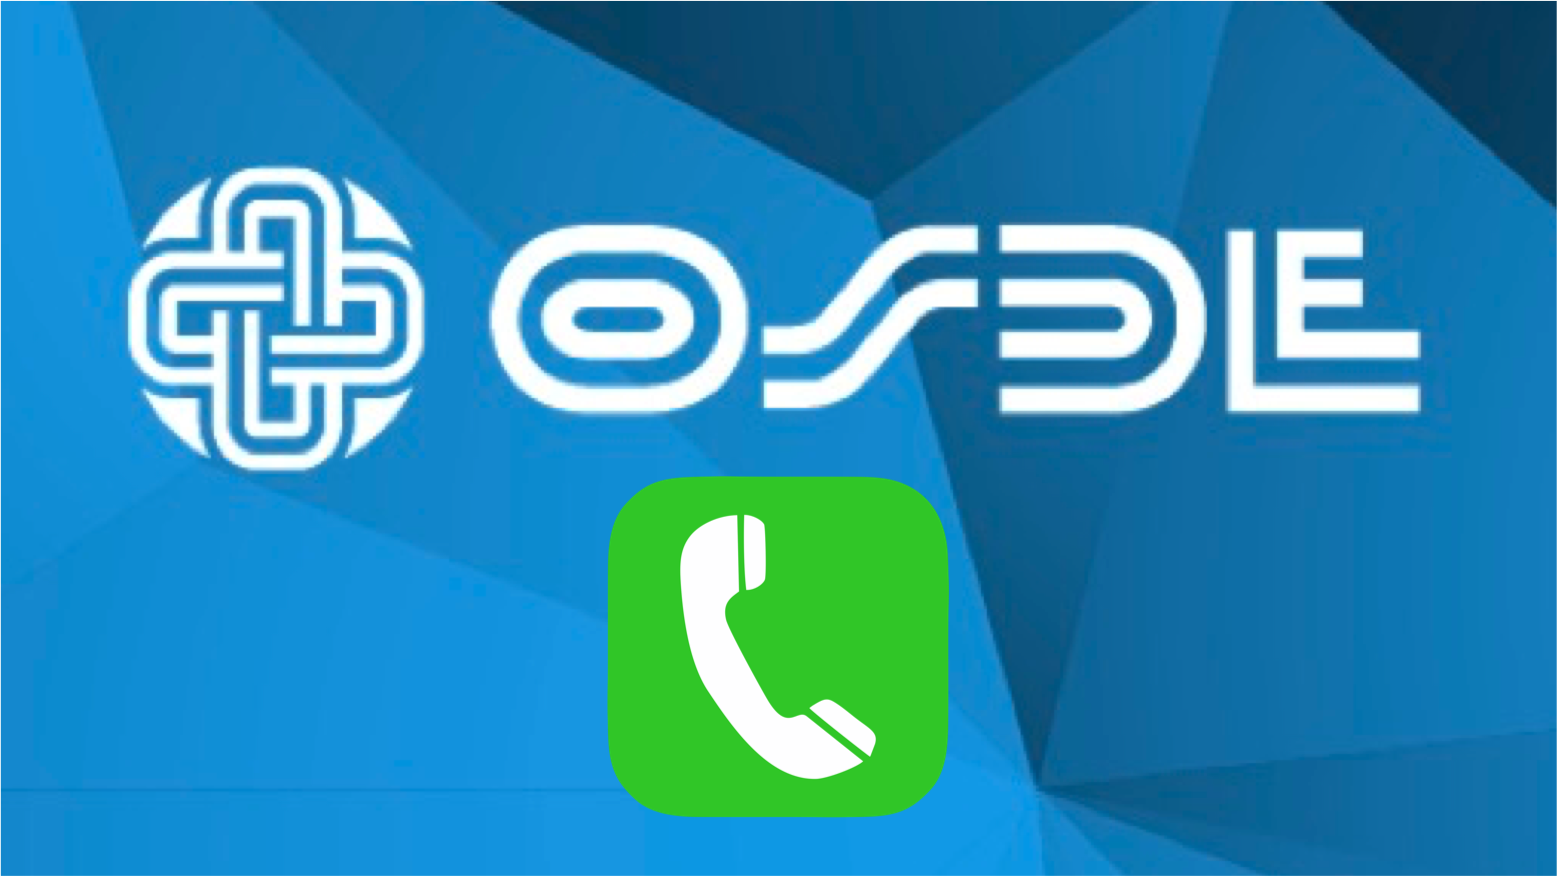 OSDE Teléfonos: Atención al Afiliado, Emergencias, Consultas y Turnos